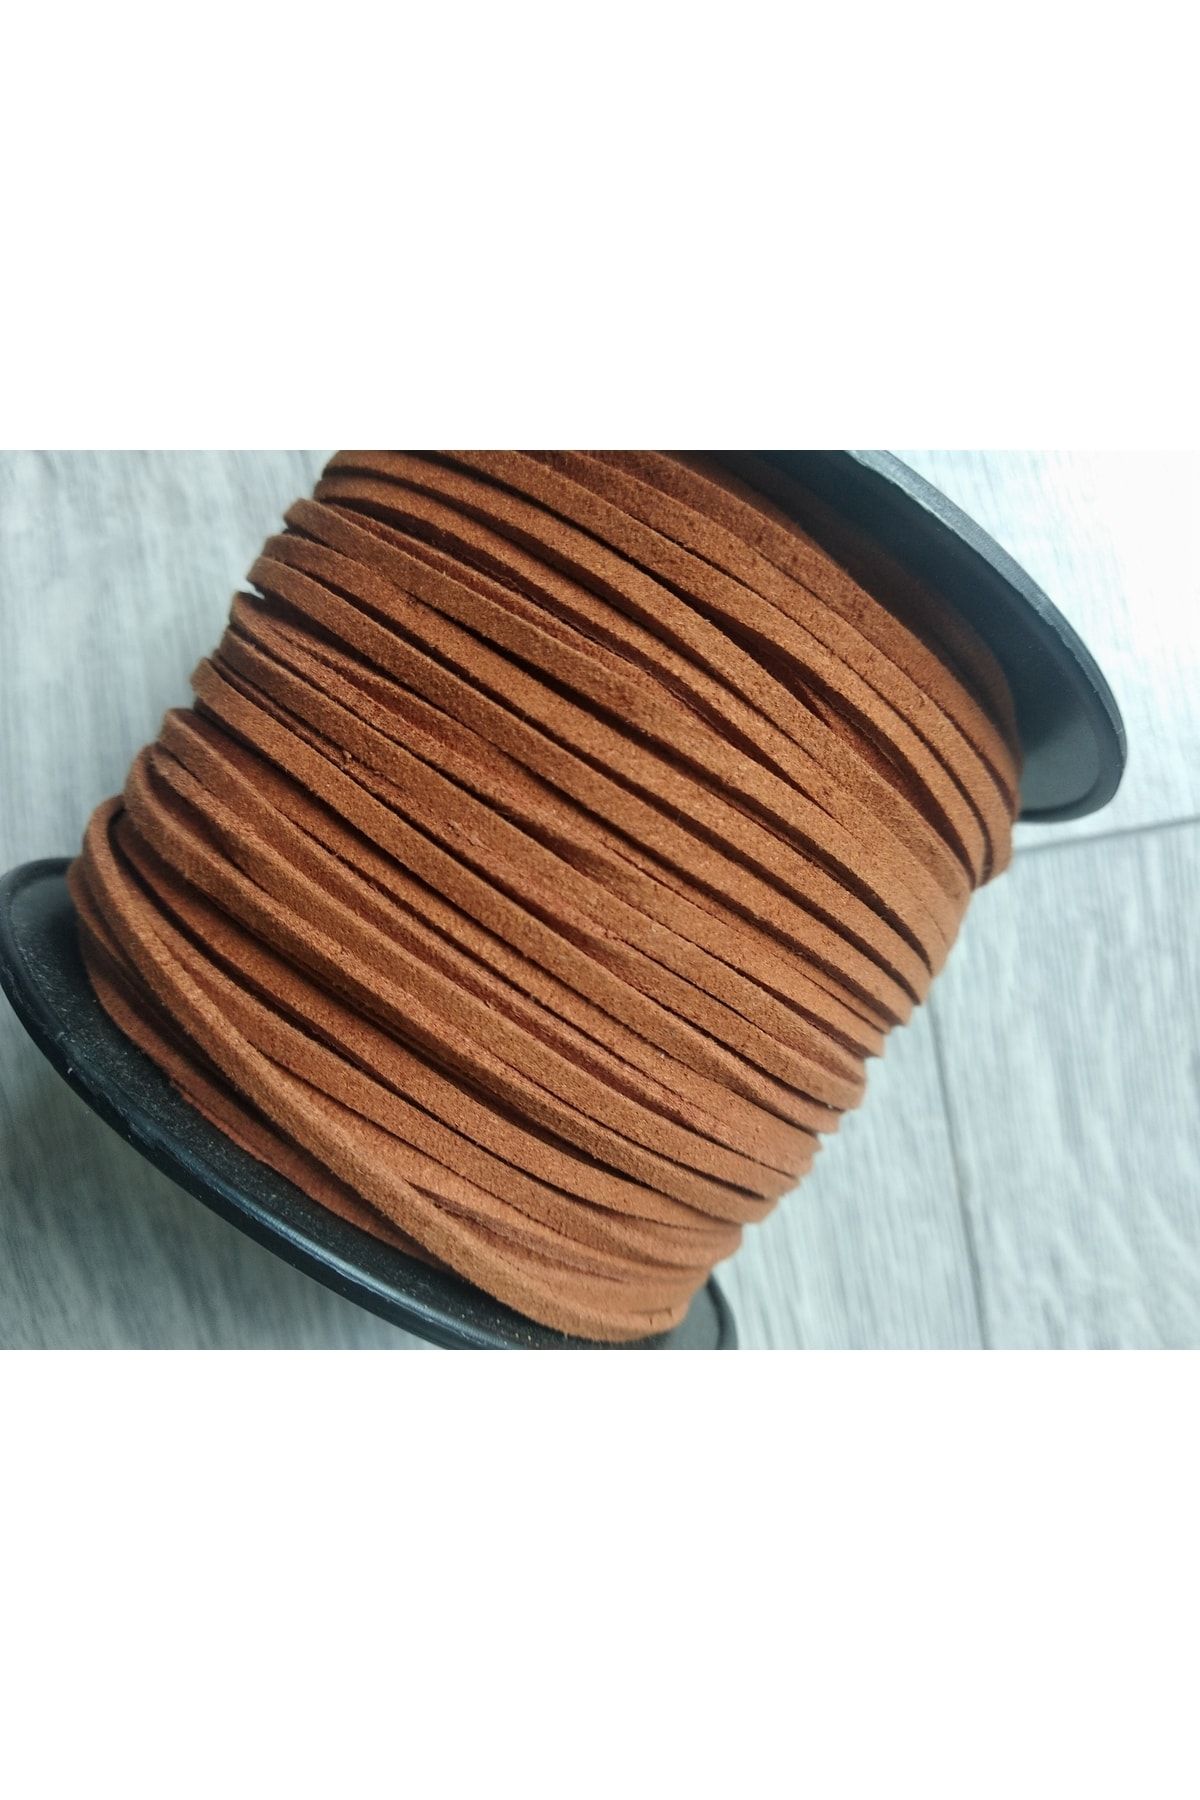 PARACORD DÜNYASI Suede Ribbon Rope, 3mm Width, (5 METERS LONG) - Trendyol